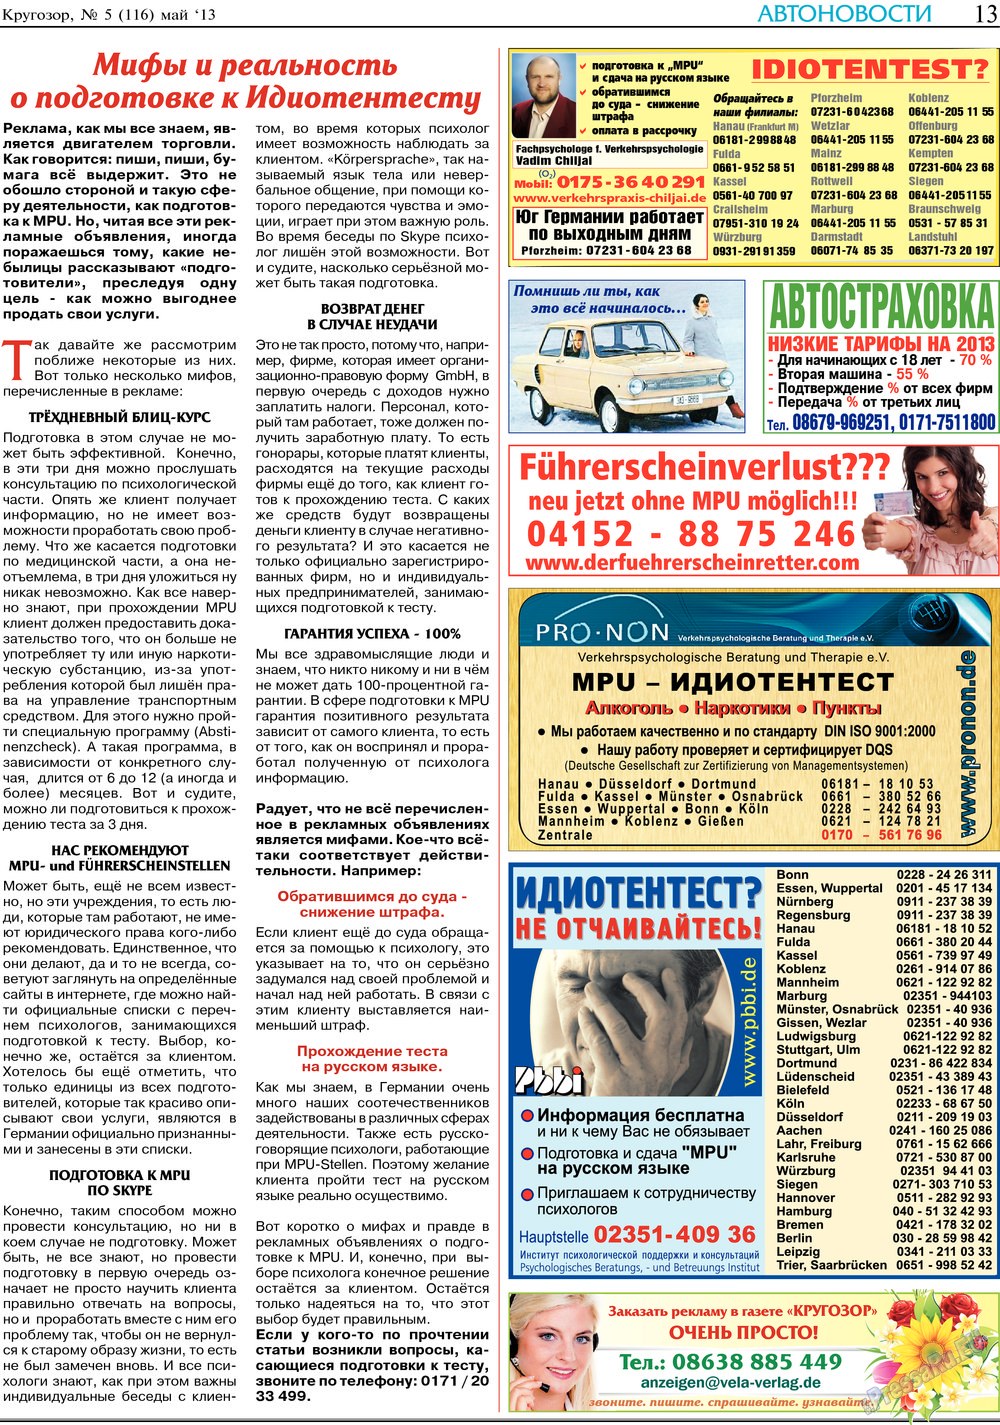 Кругозор, газета. 2013 №5 стр.13